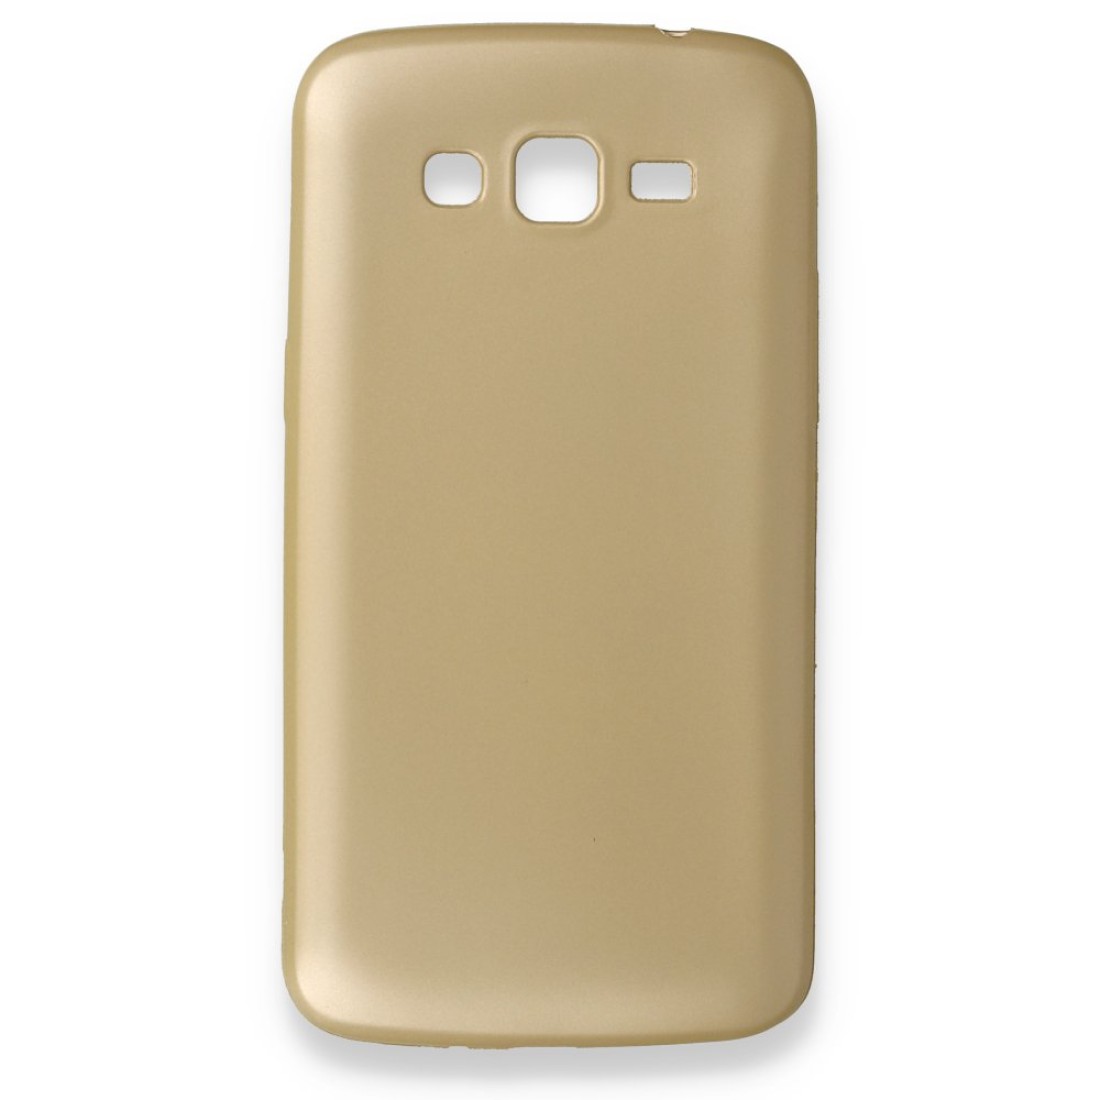 Samsung Galaxy Grand 2 Kılıf Premium Rubber Silikon - Gold